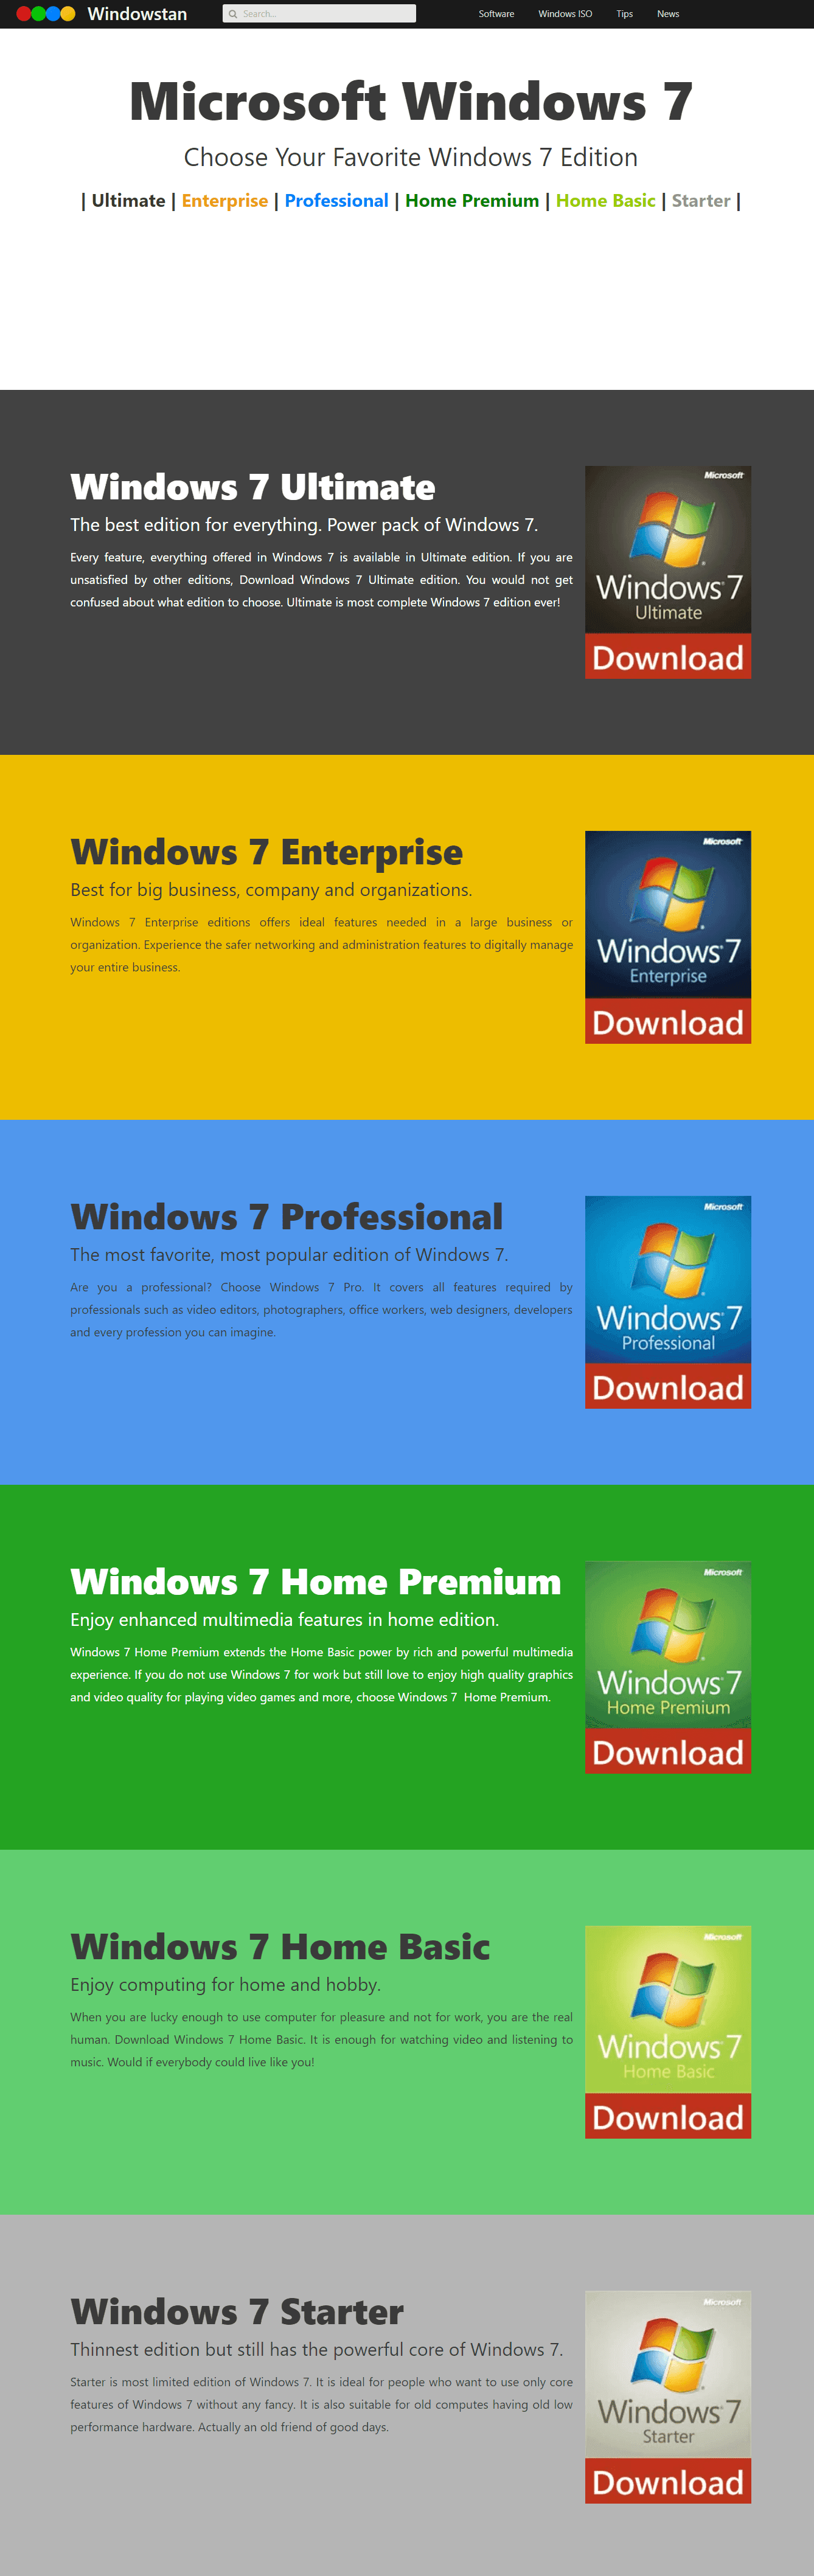 Windows 7 Editions compare